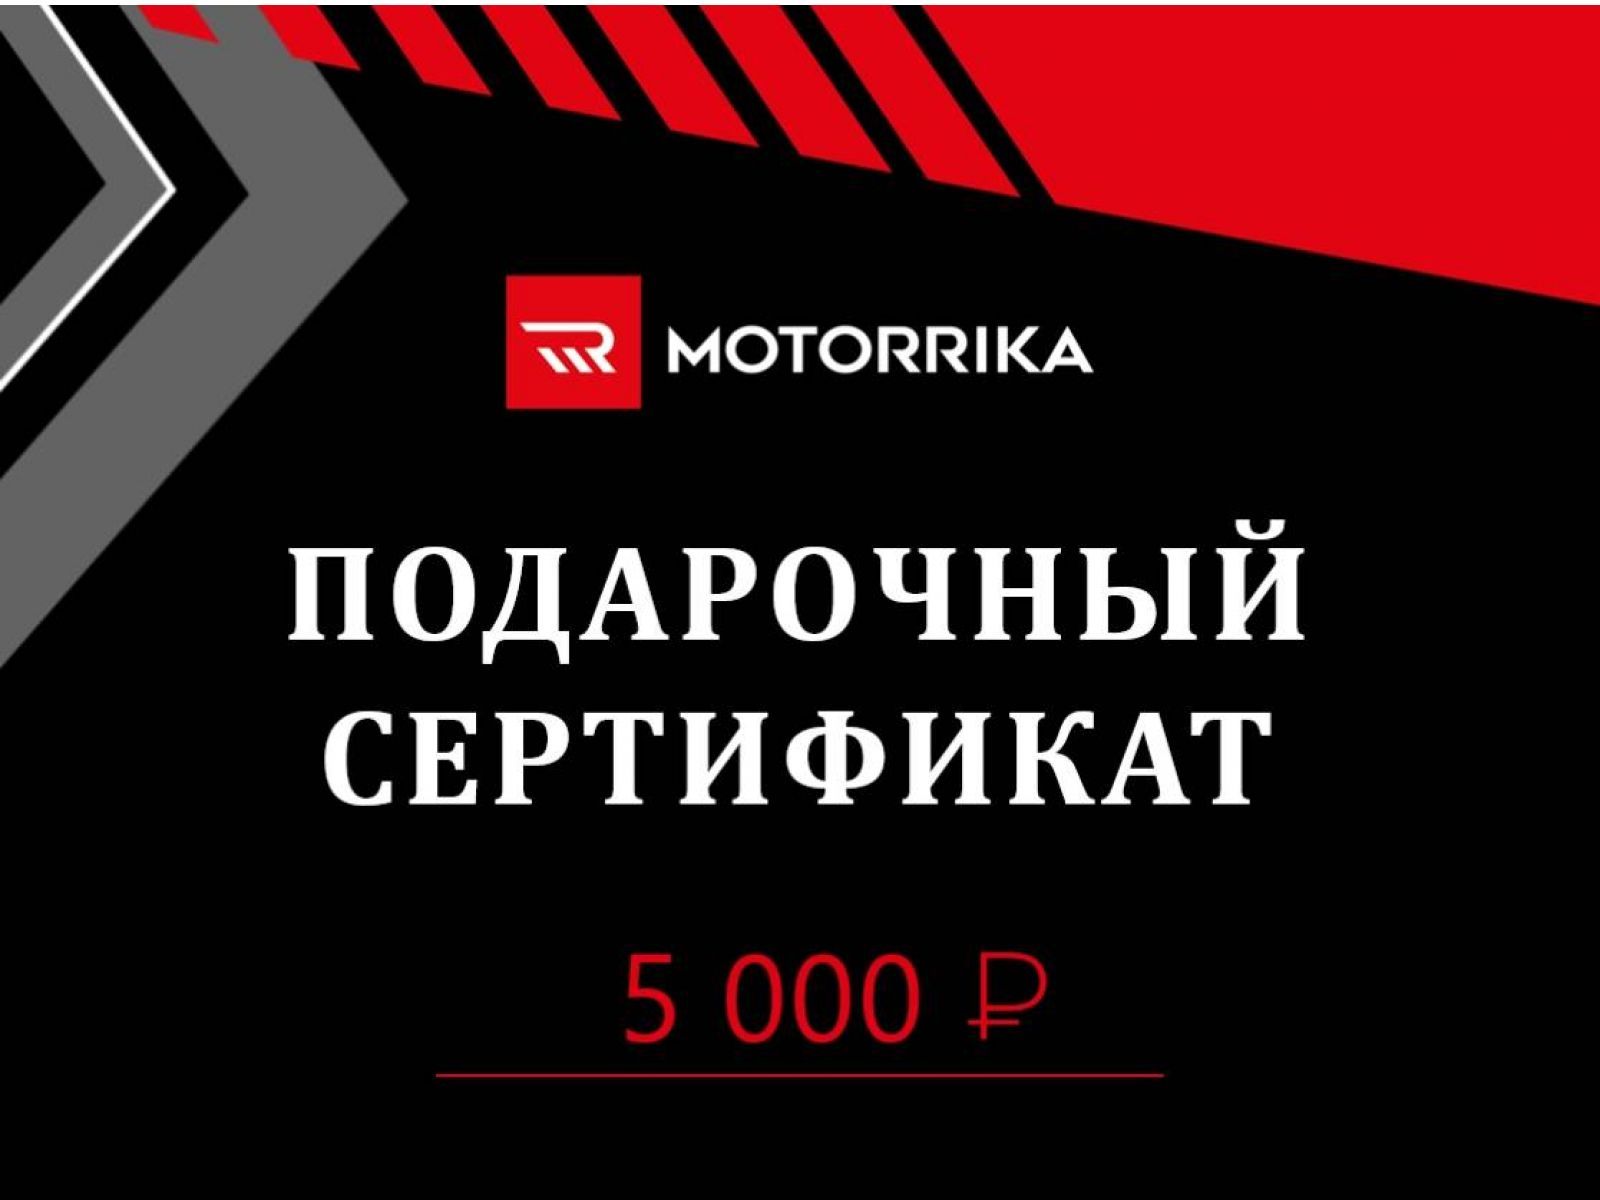 Подарочный сертификат 5000 руб